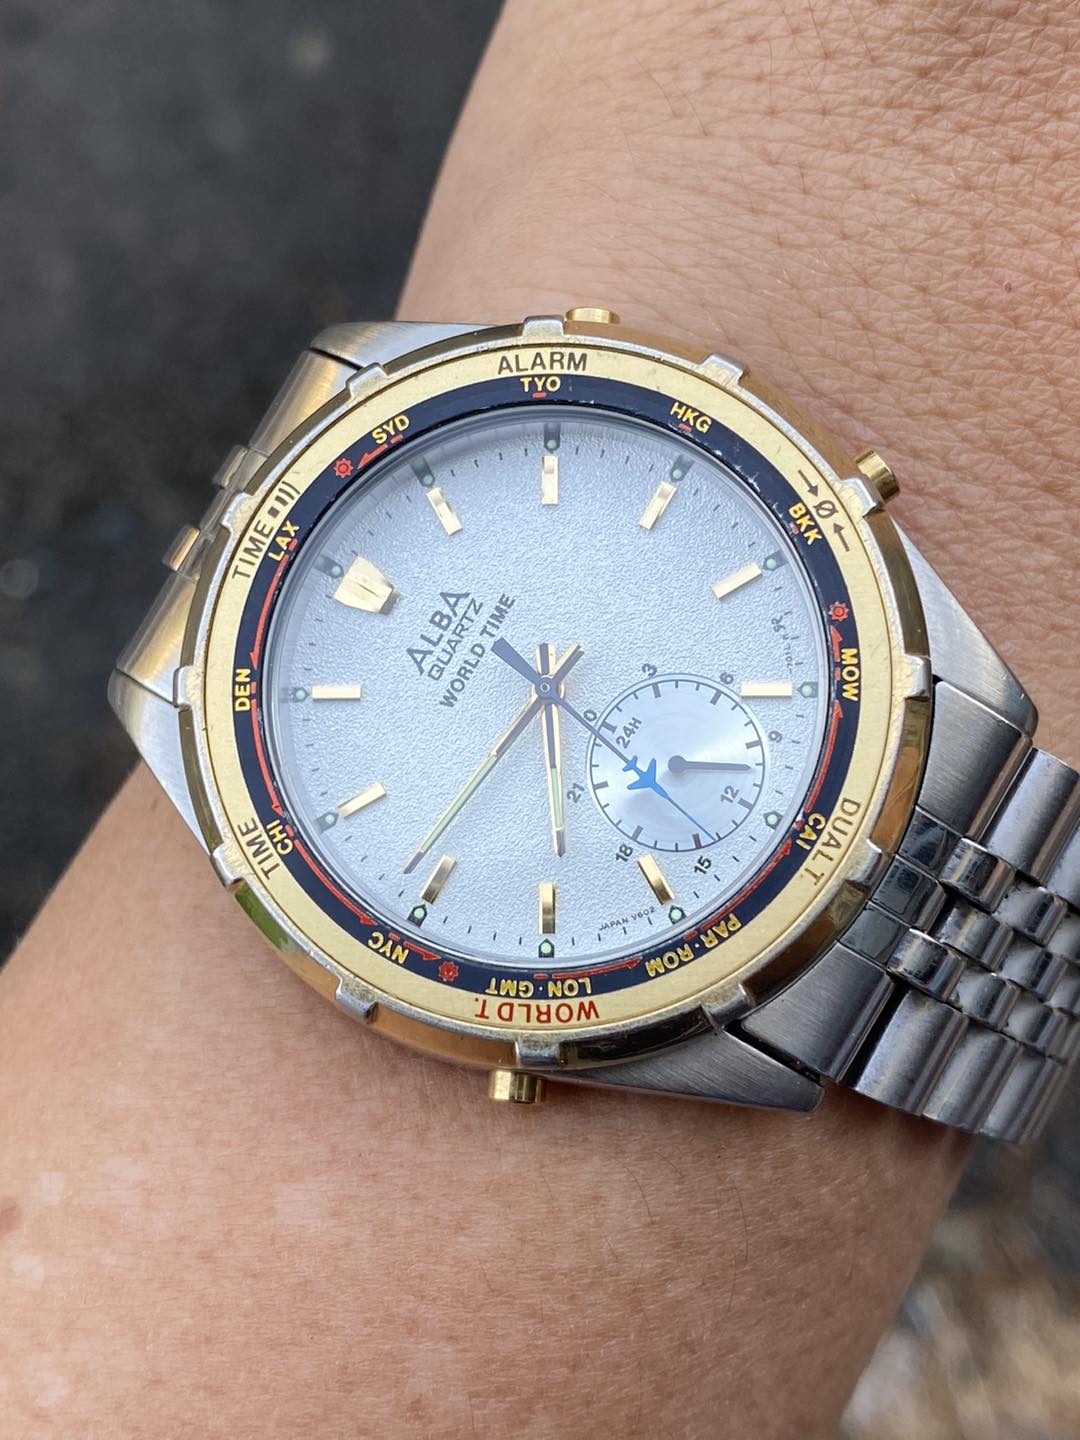 SEIKO ALBA Quartz World time V602-7010 watch Alarm